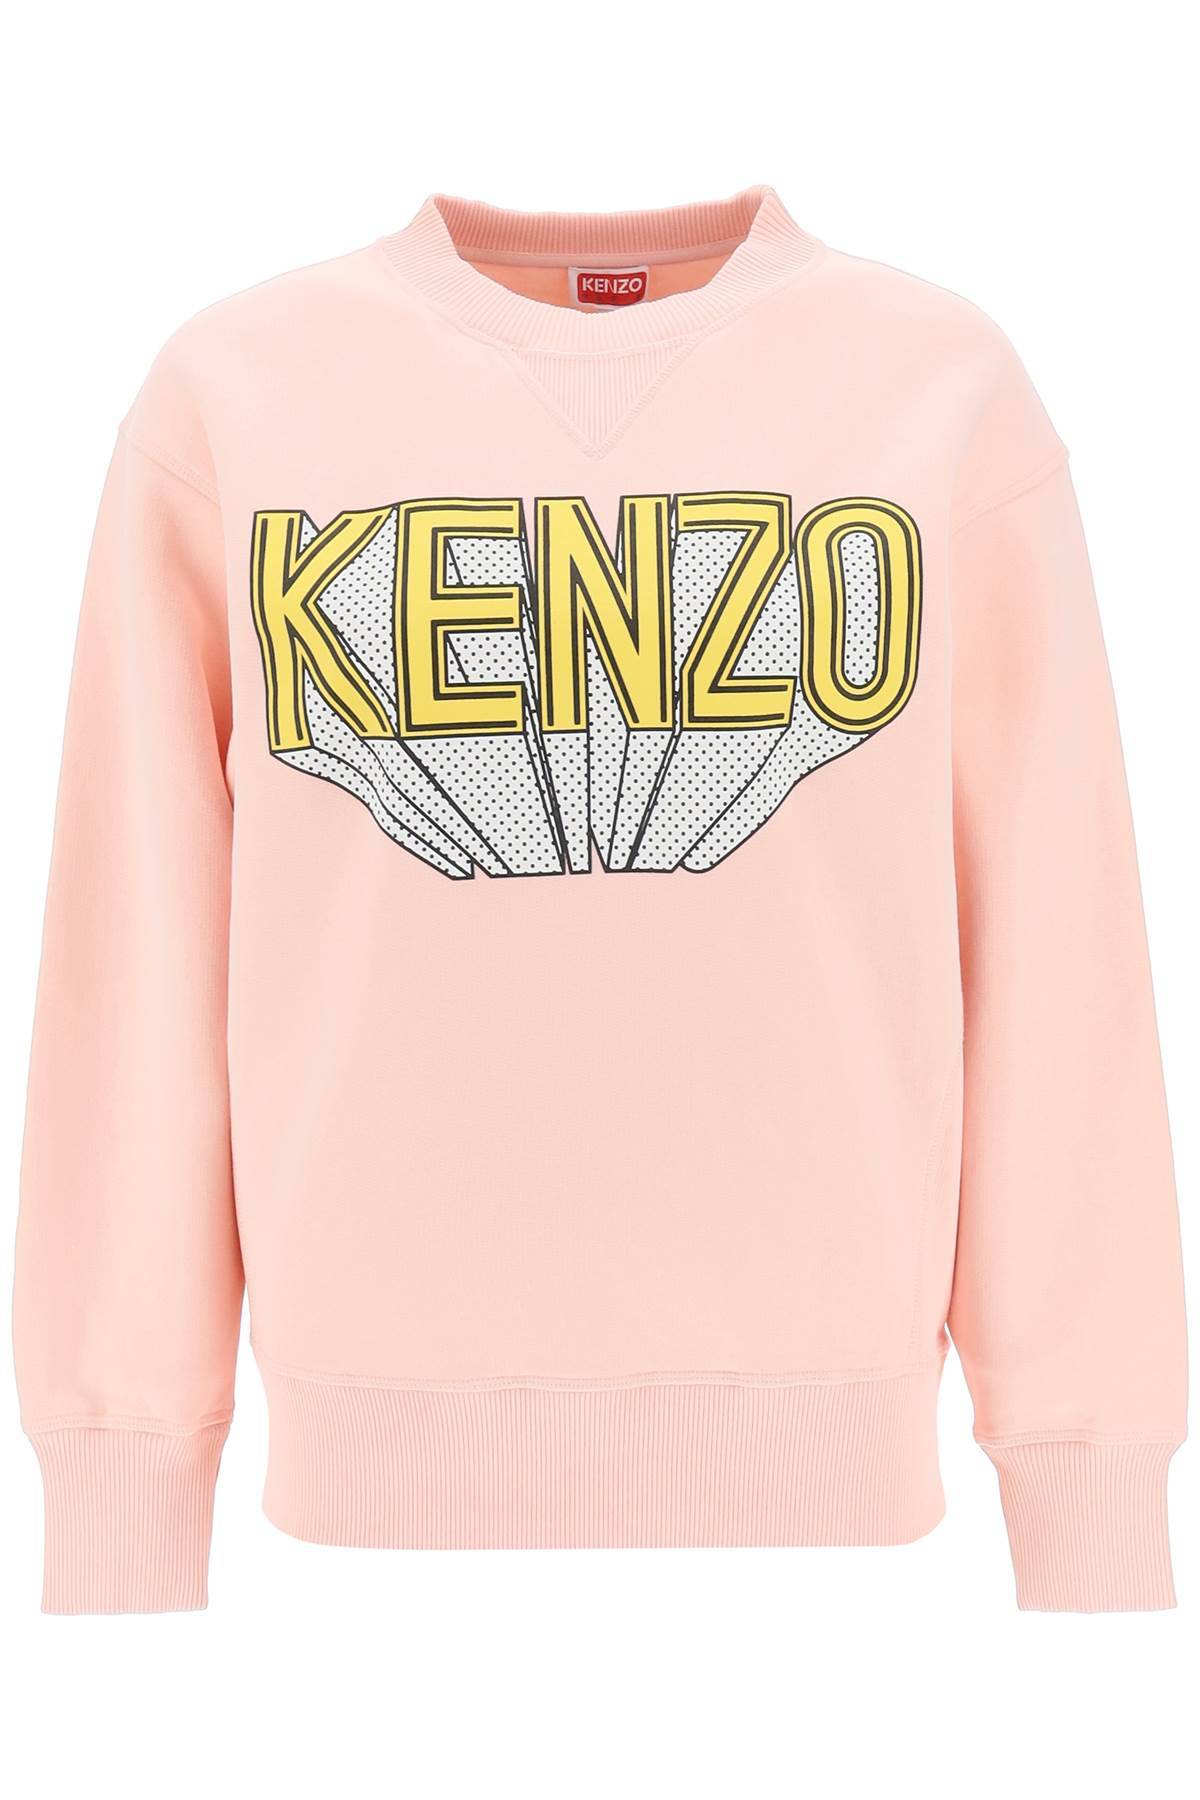 Kenzo KENZO 3d-printed crew-neck sweatshirt